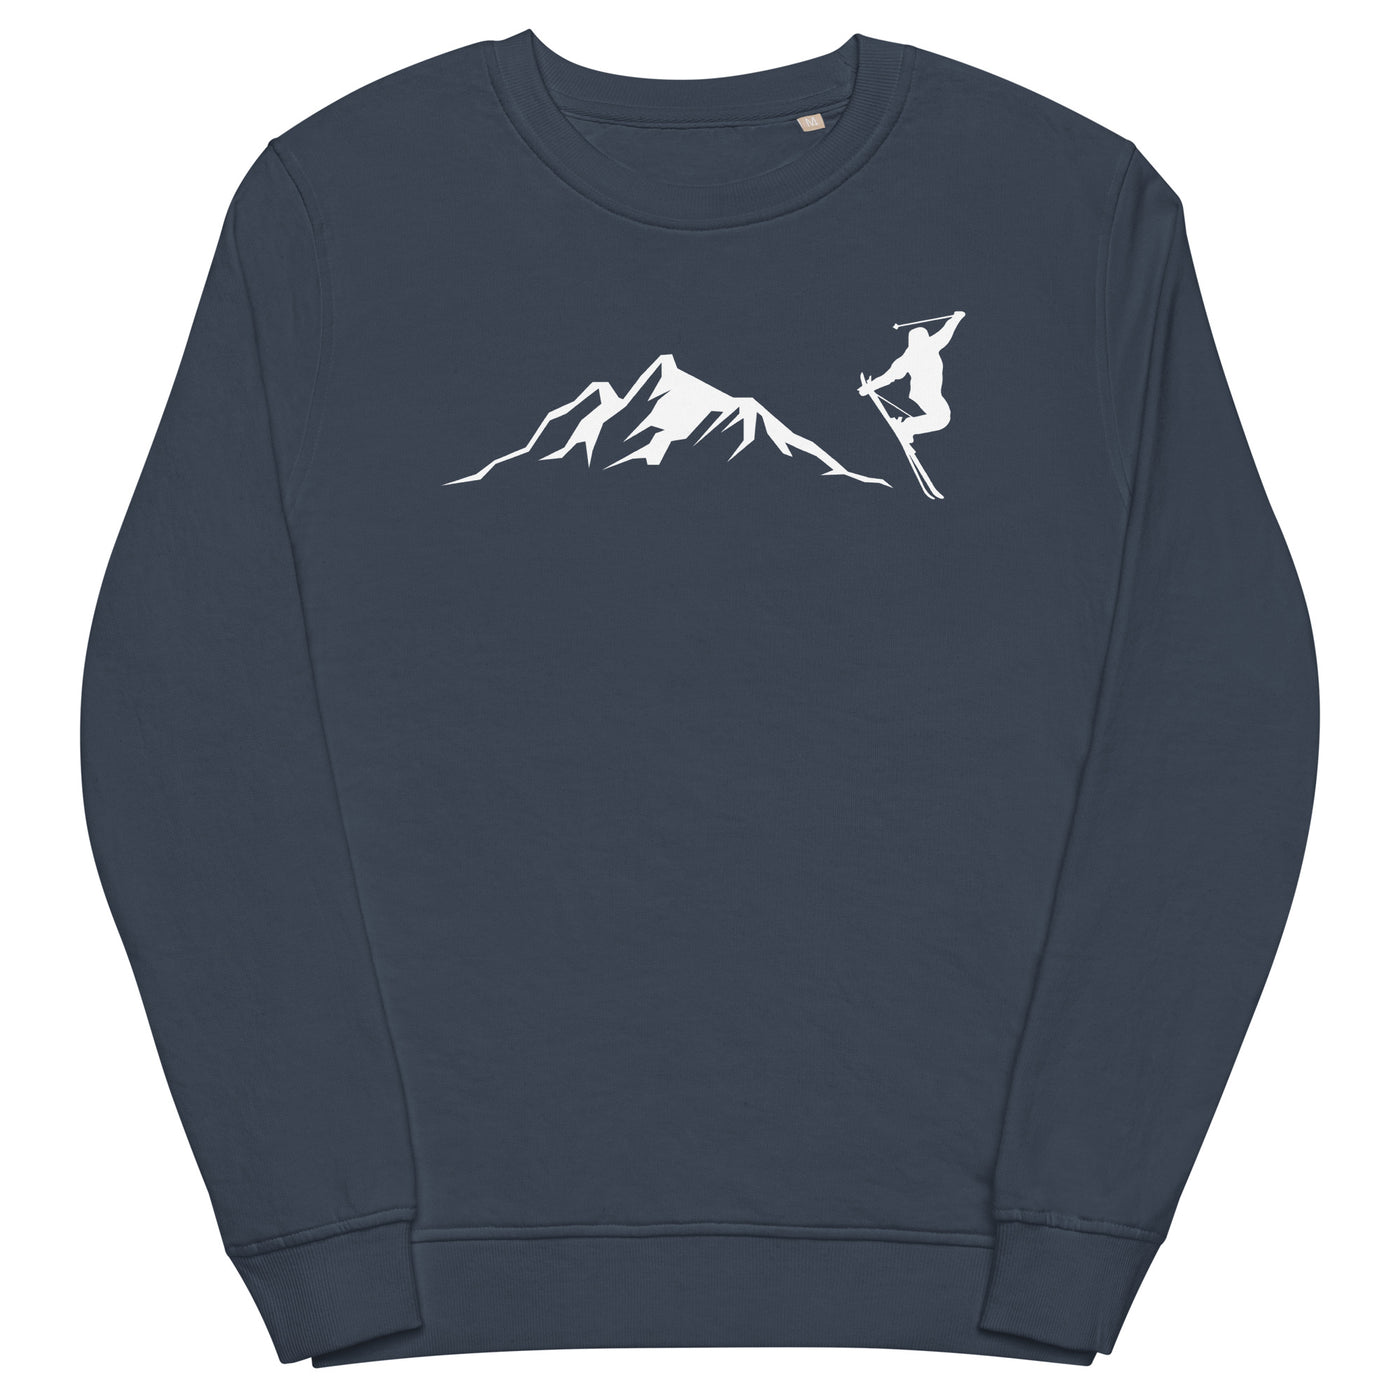 Berge - Skifahren - (14) - Unisex Premium Organic Sweatshirt klettern ski xxx yyy zzz French Navy